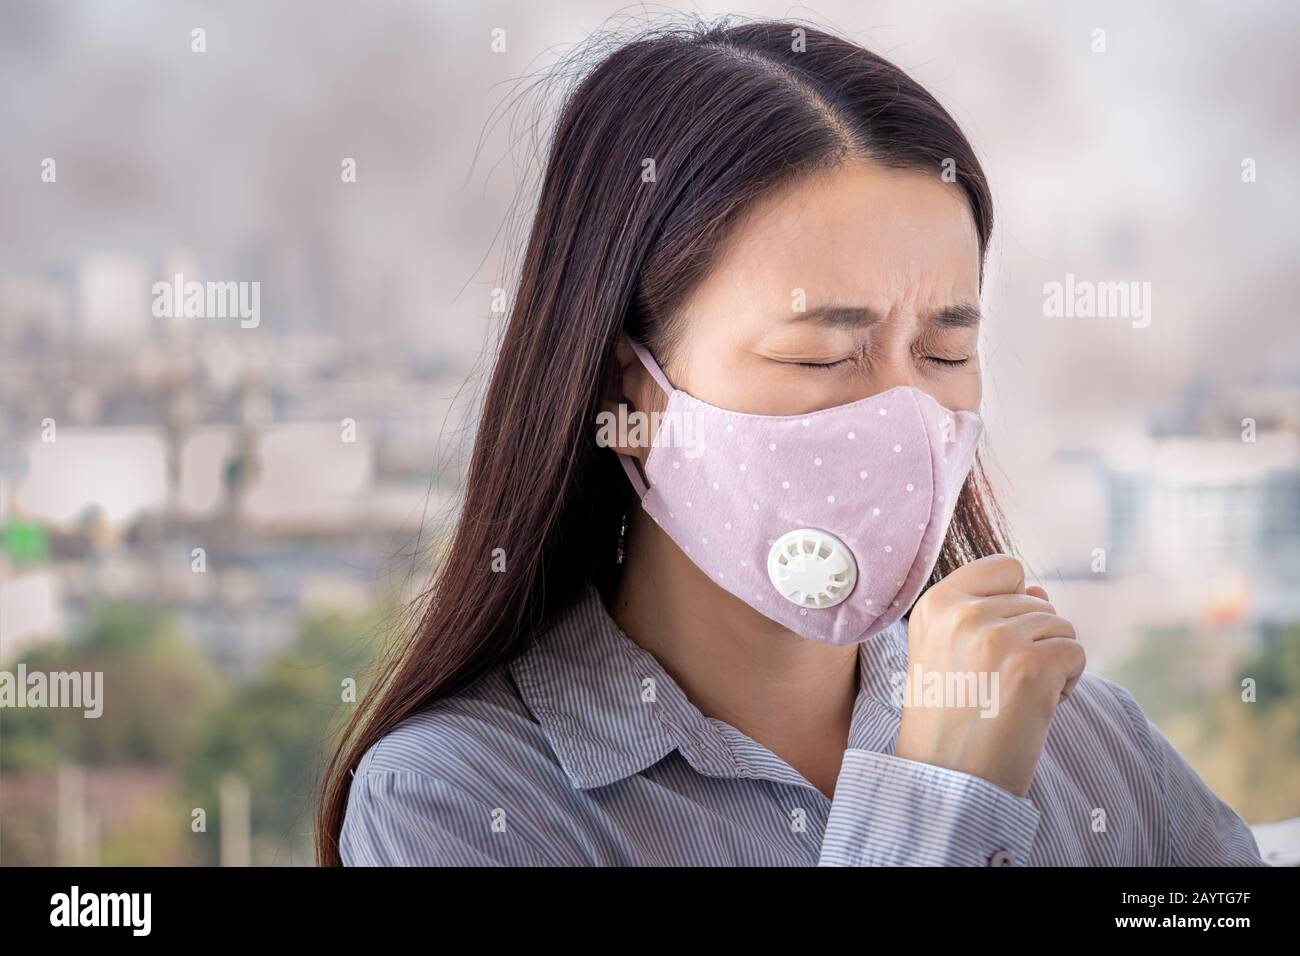 PM2,5. Les personnes malades de la pollution atmosphérique, l'environnement a des effets nocifs ou toxiques. Les femmes de la ville portent un masque facial pour se protéger Banque D'Images